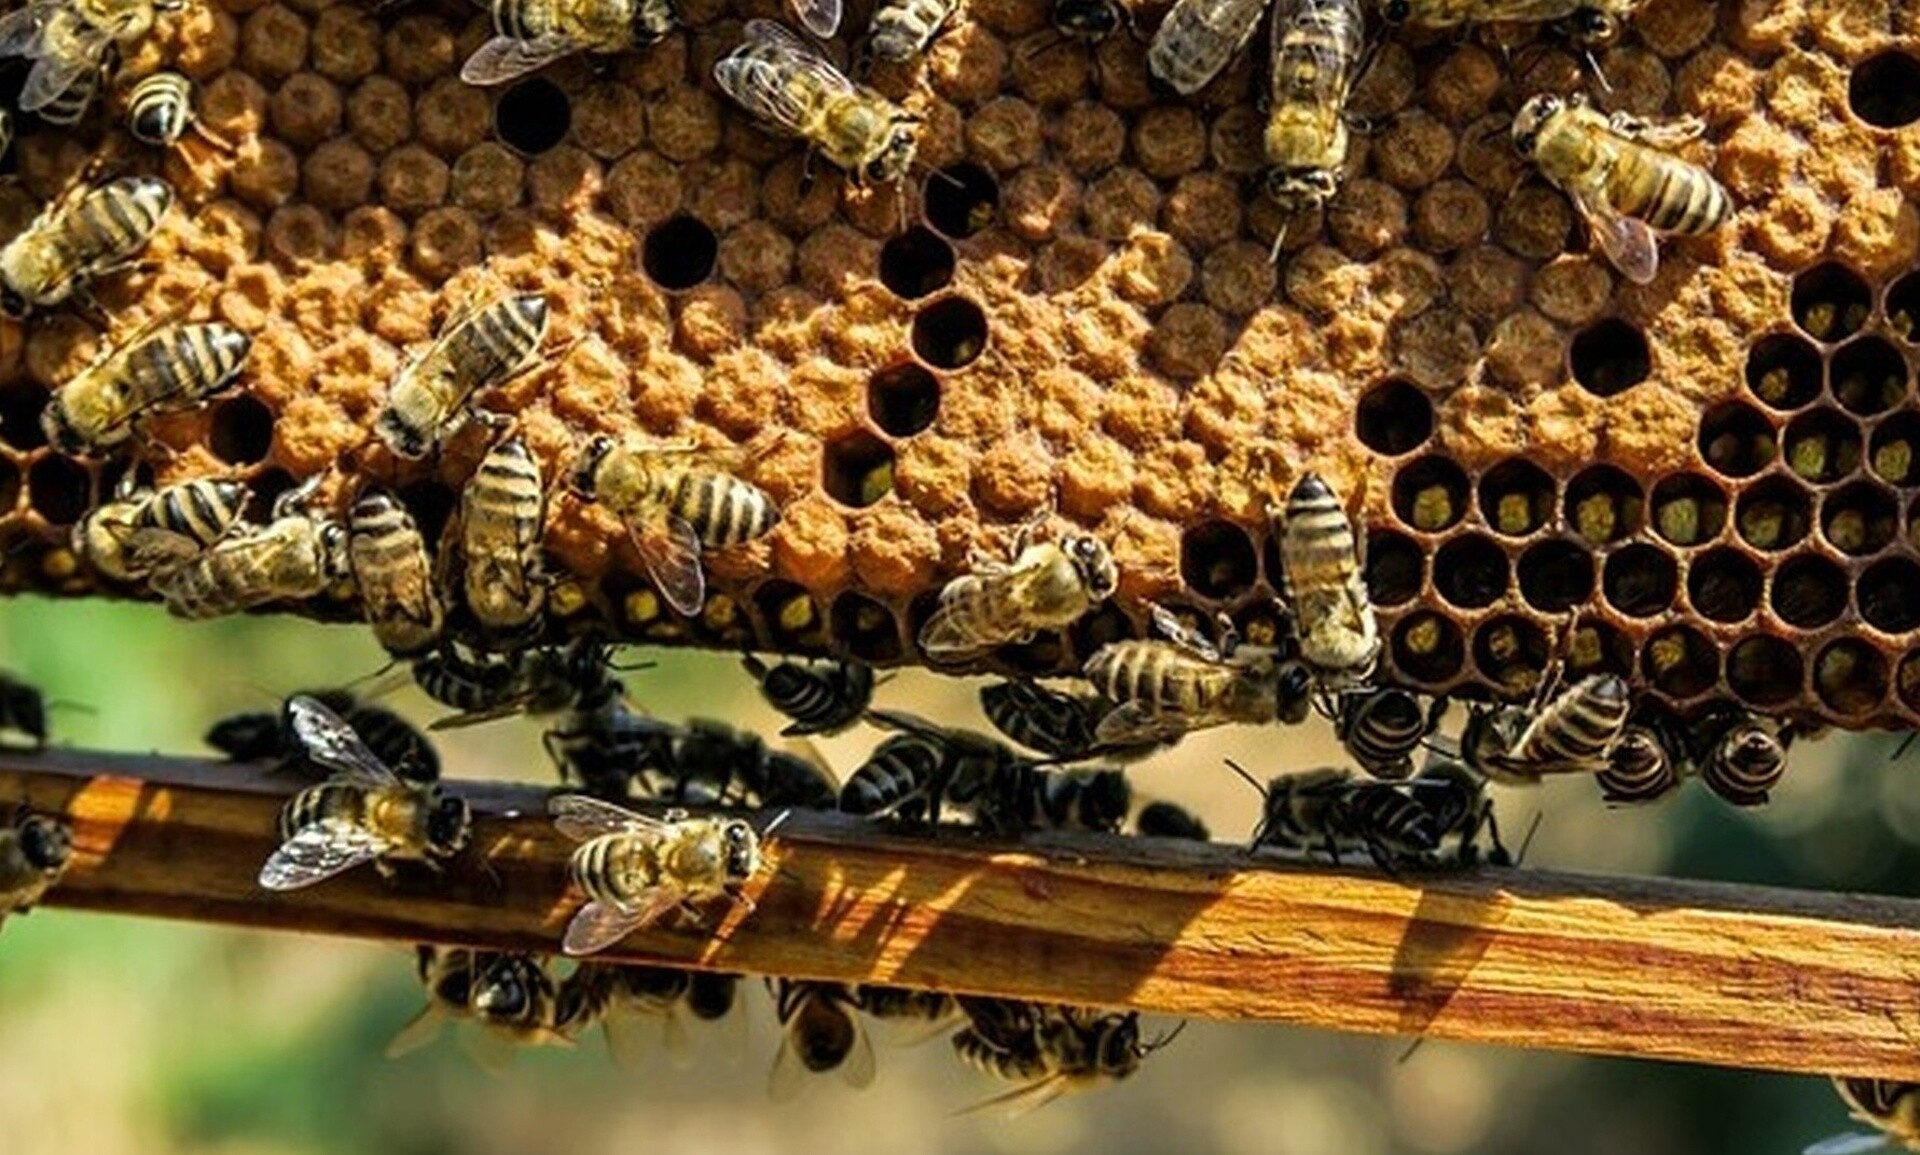 Εκατομμύρια μέλισσες «τράκαραν» σε αυτοκινητόδρομο - Αγώνας για να σωθούν